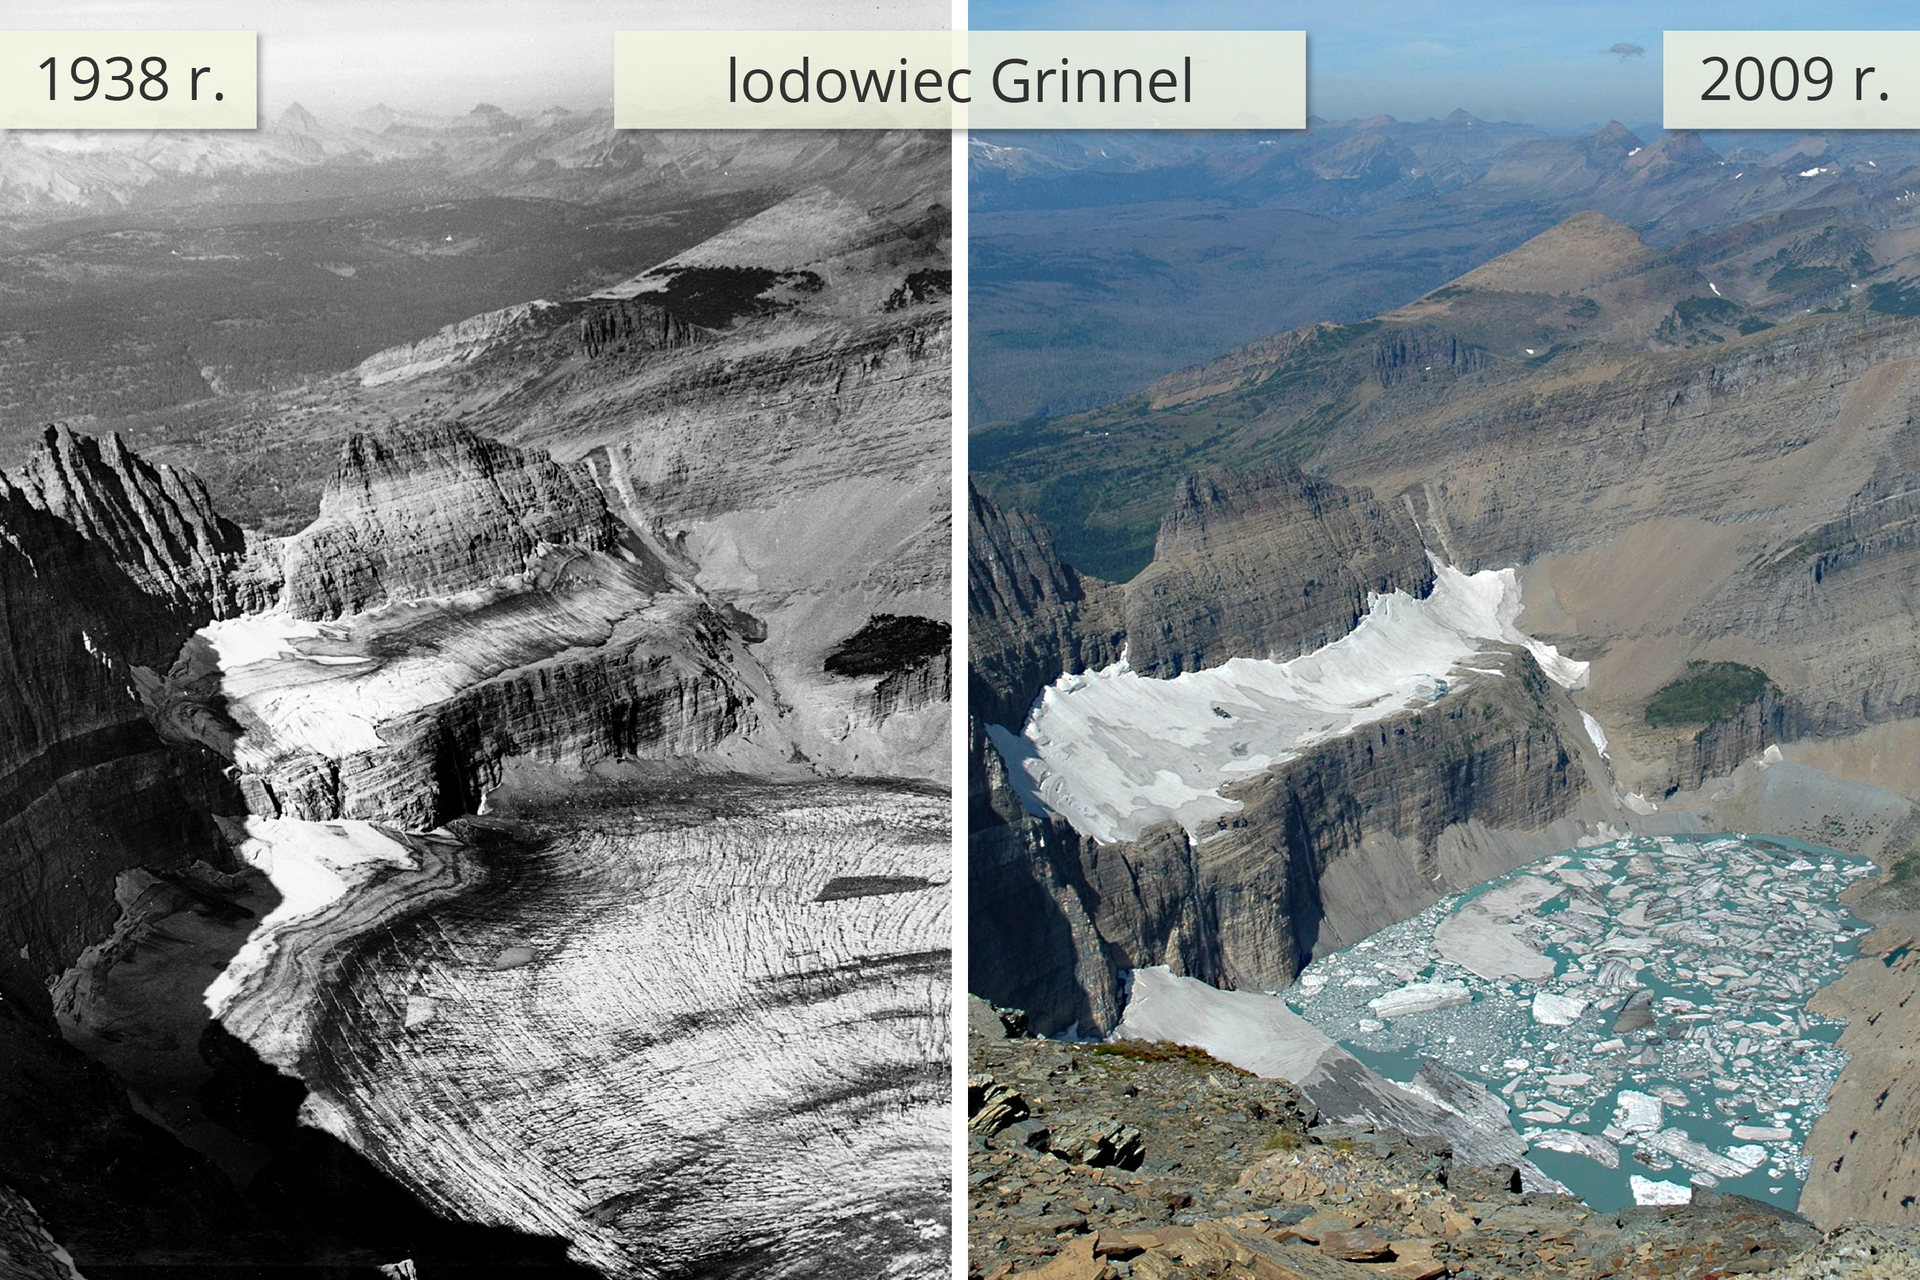 Dwie fotografie obok siebie prezentują wygląd lodowca w 1938 roku oraz w 2009 roku.Zdjęcie po lewej stronie pokazuje lodowiec pokrywający szczyty górskie oraz podnóże. Zdjęcie obok pokazuje ten sam lodowiec kilkadziesiąt lat później. Lodowiec pokrywa w niewielkim stopniu szczyt górski, a u podnóża góry znajduje się jezioro.